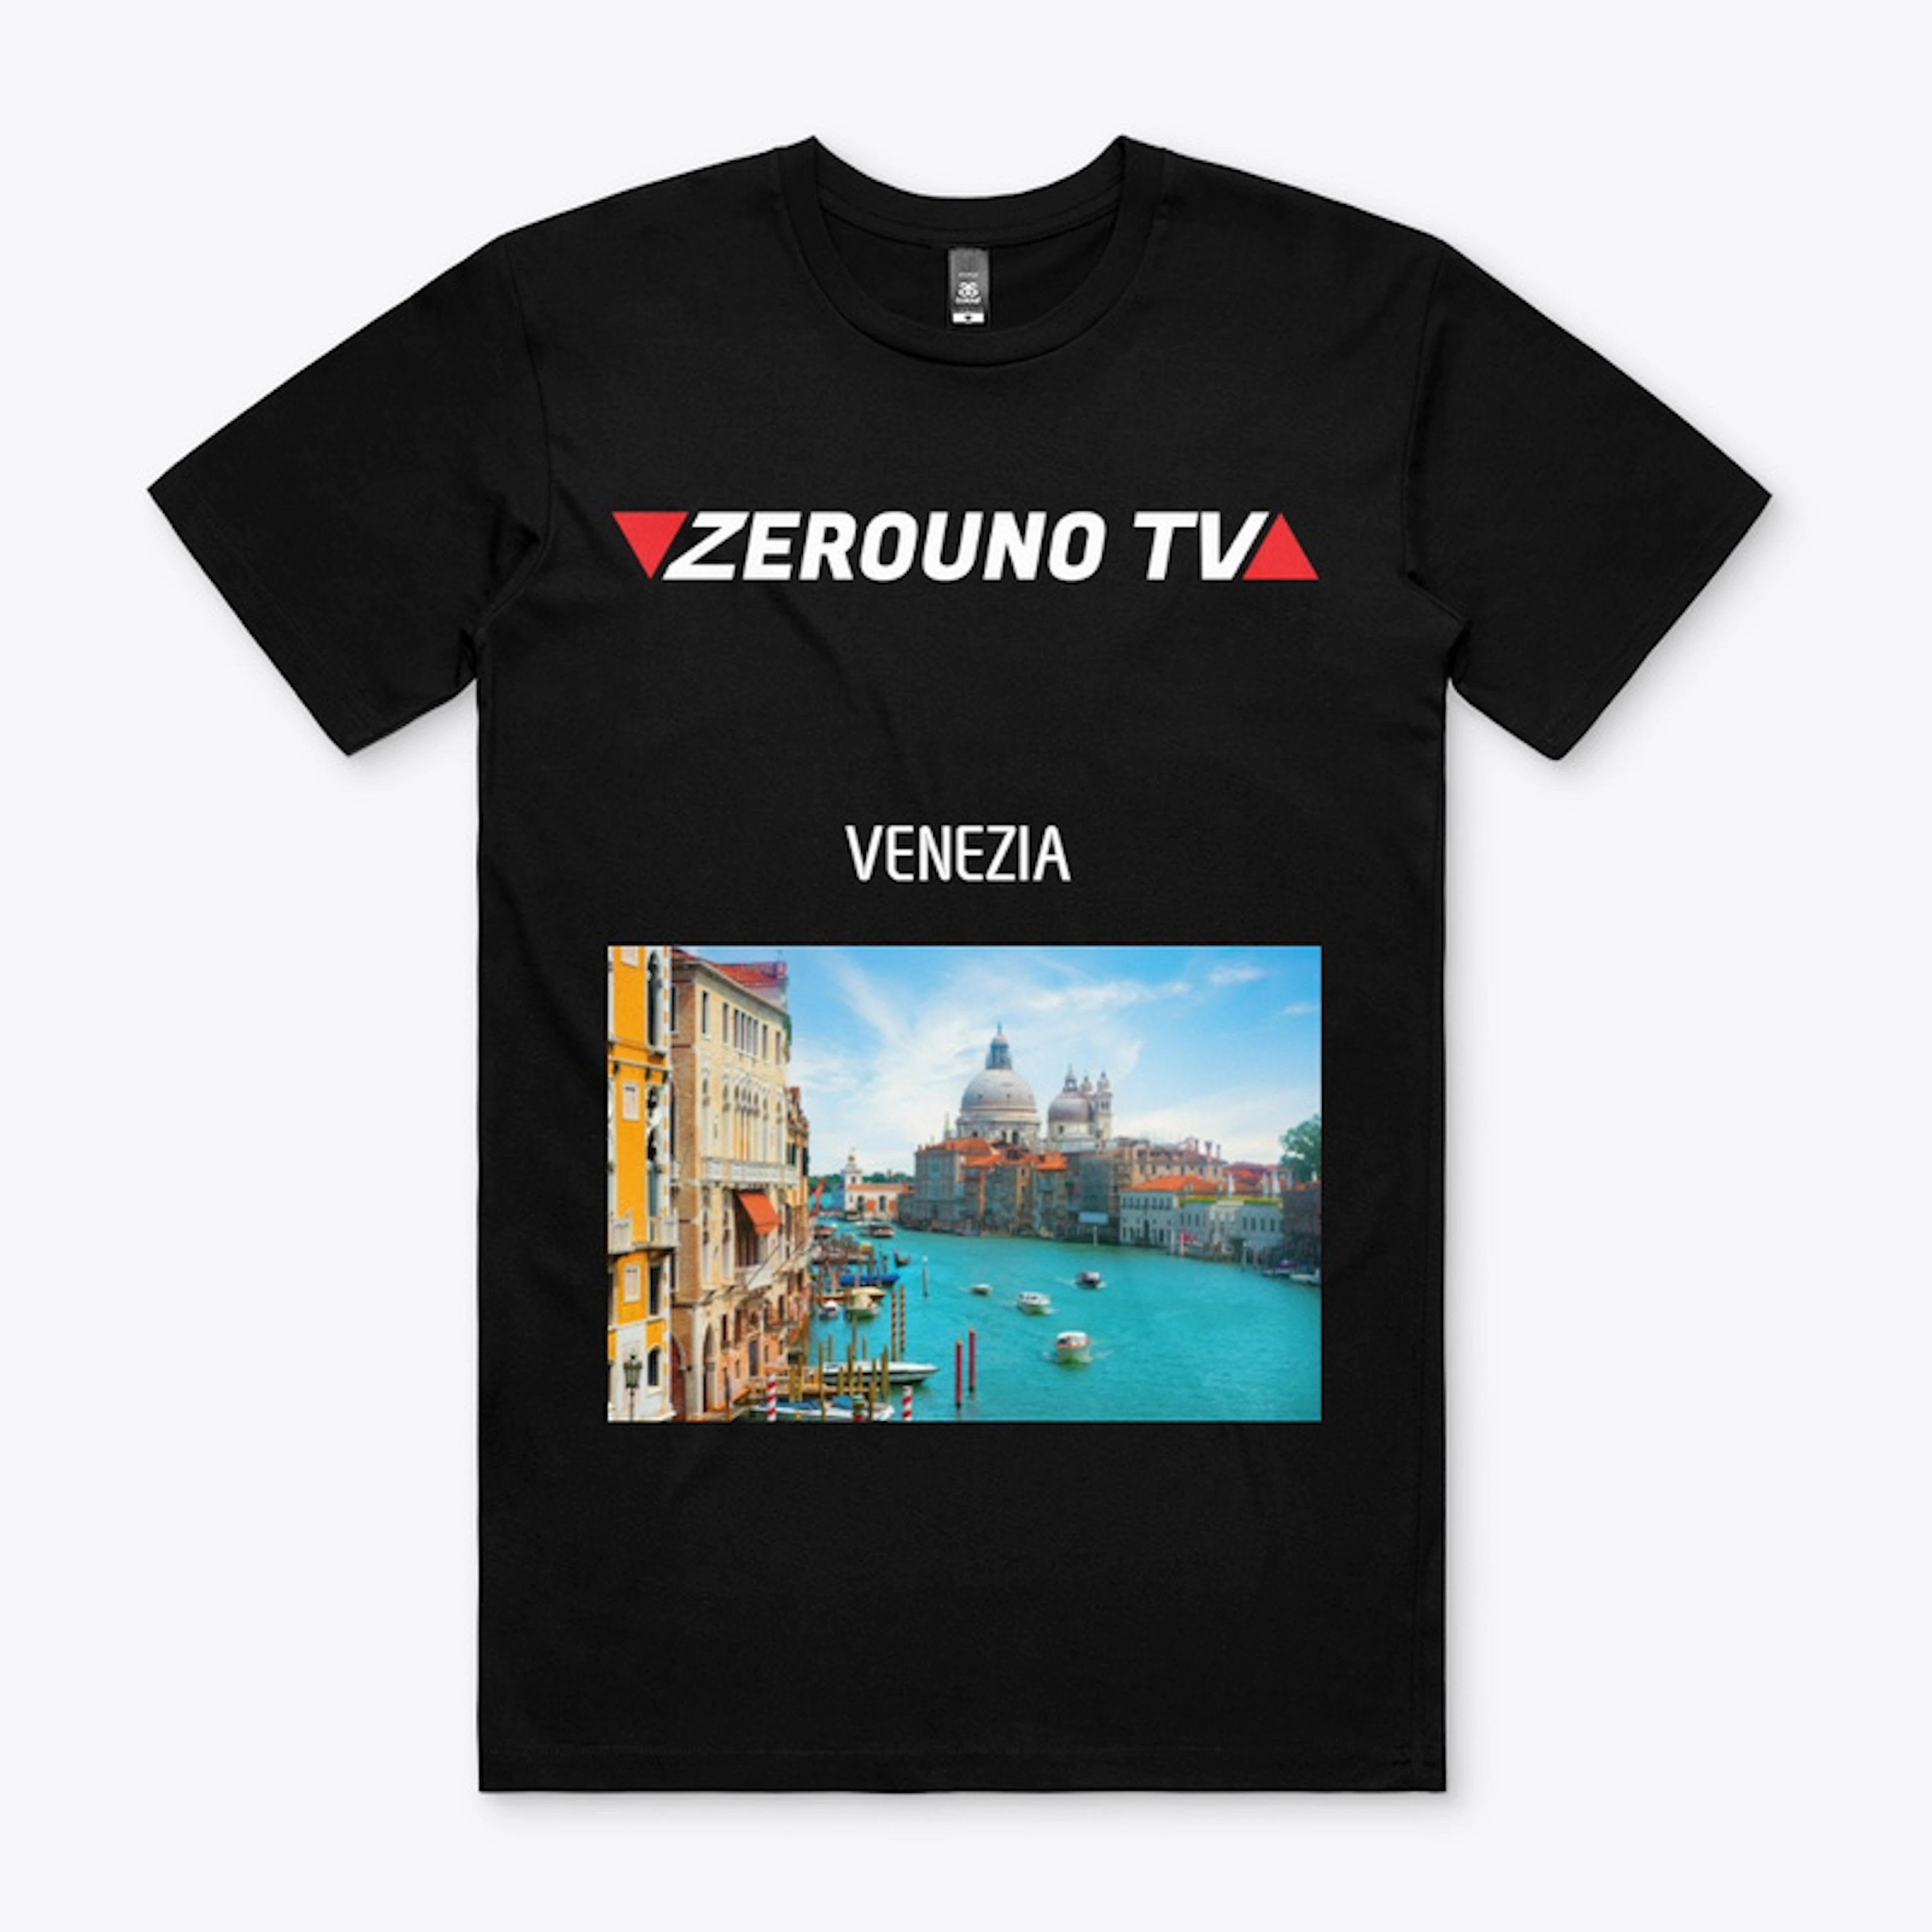 Zerouno TV Venezia